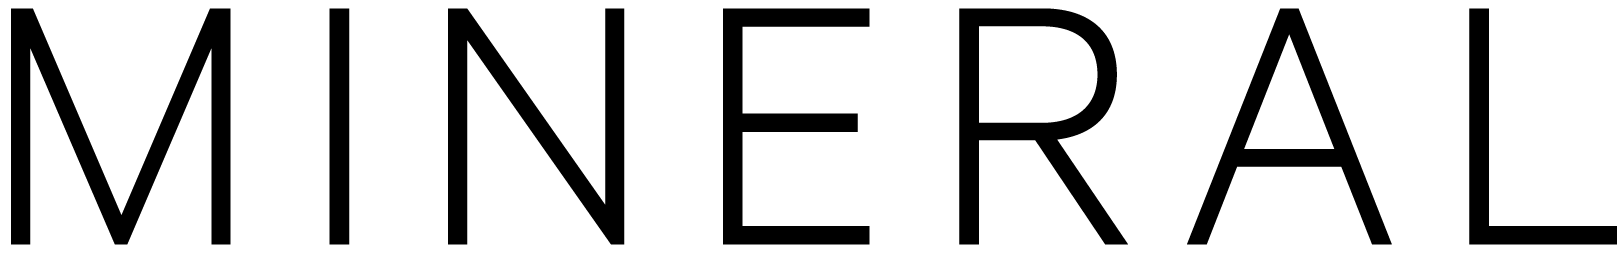 mineral-logo-transparent-black.png